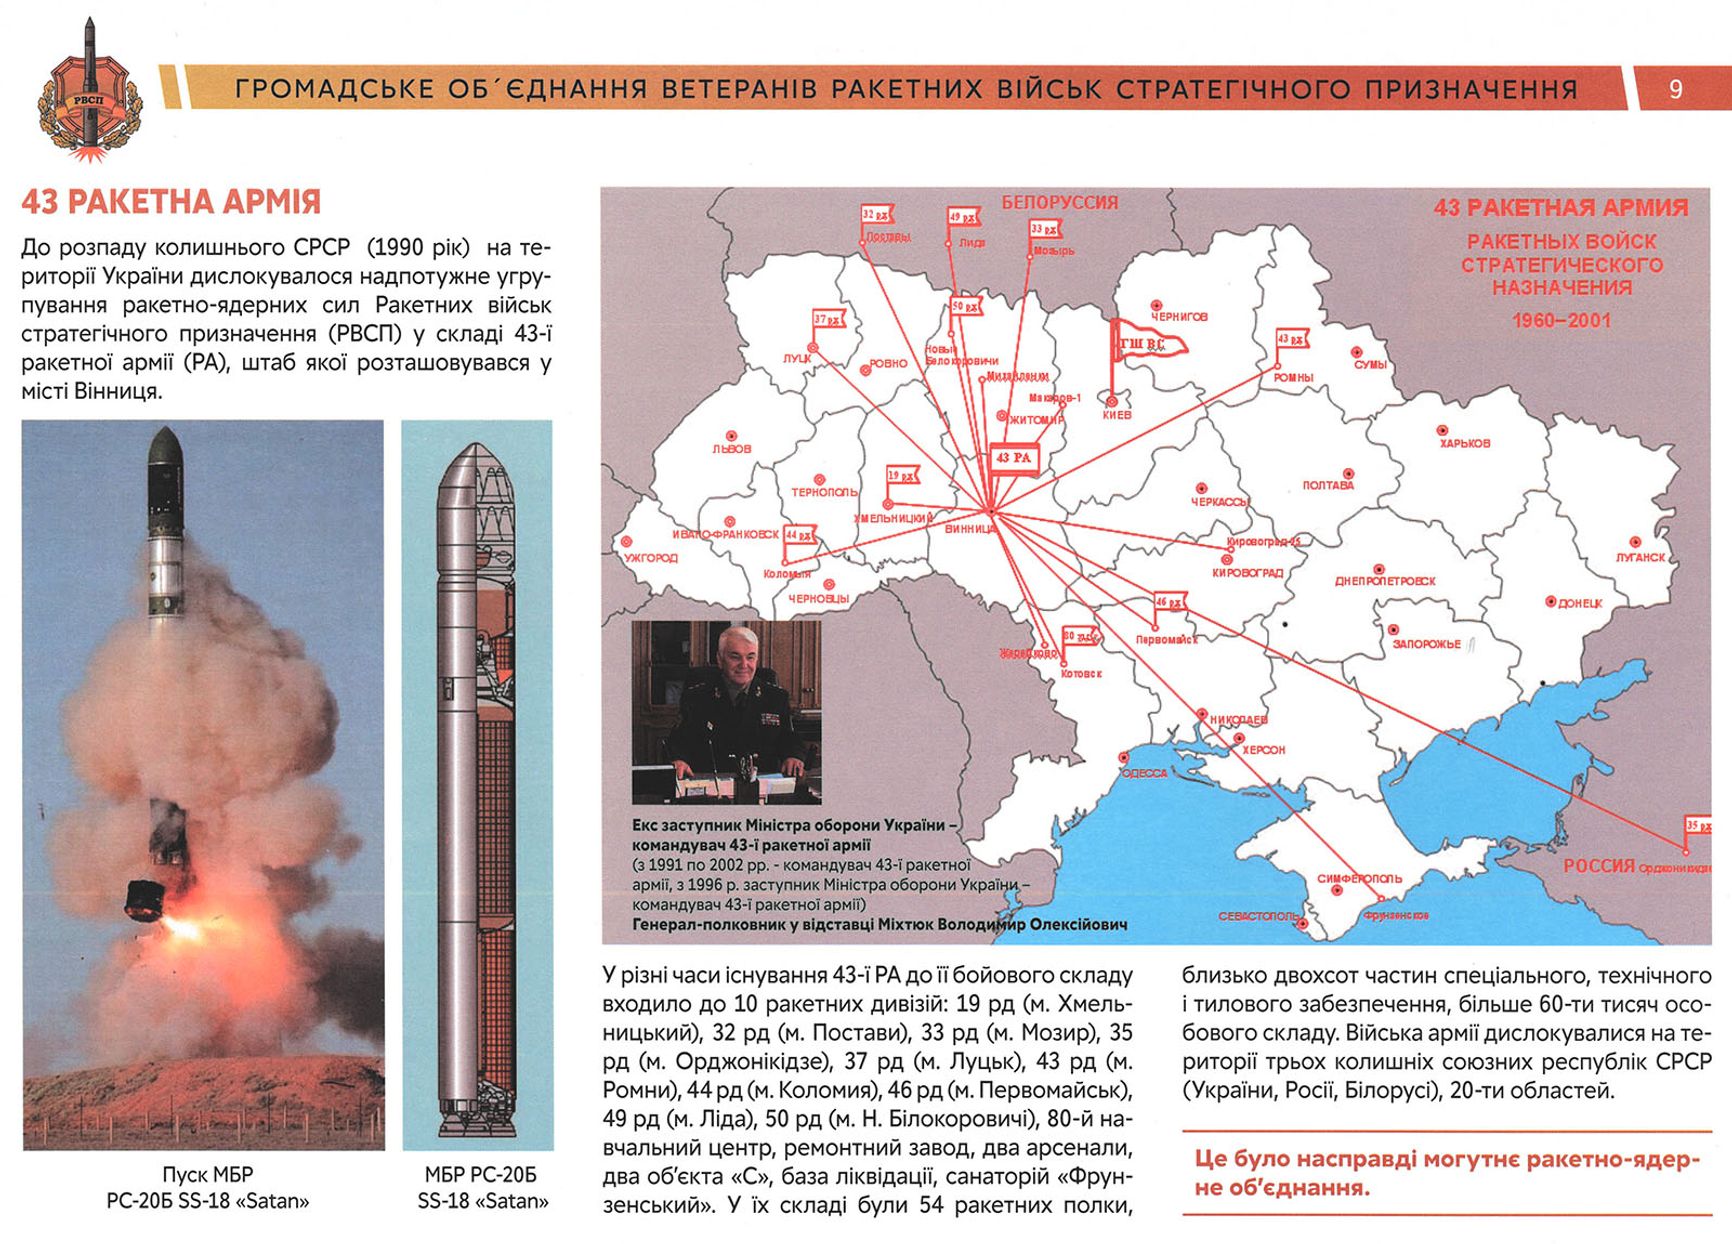 Экзистенциальное вранье. Как Путин придумал ядерную угрозу со стороны Украины, чтобы обосновать войну